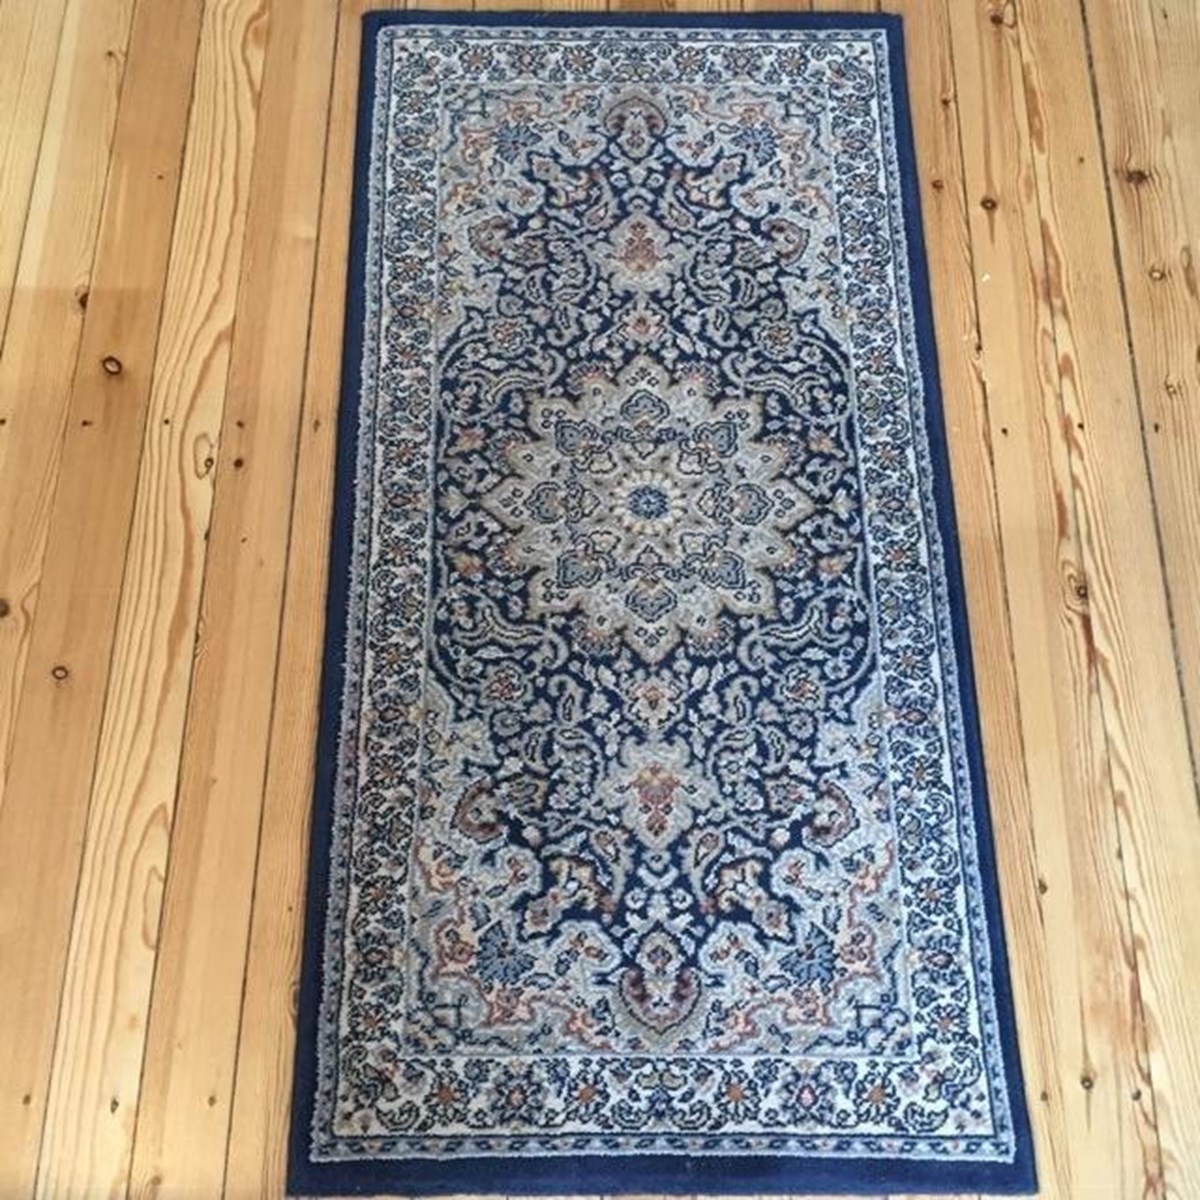 For et par år siden købte Rikke dette persiske tæppe for 50 kroner. Hun blev senere træt af det og solgte det for 350 kroner.